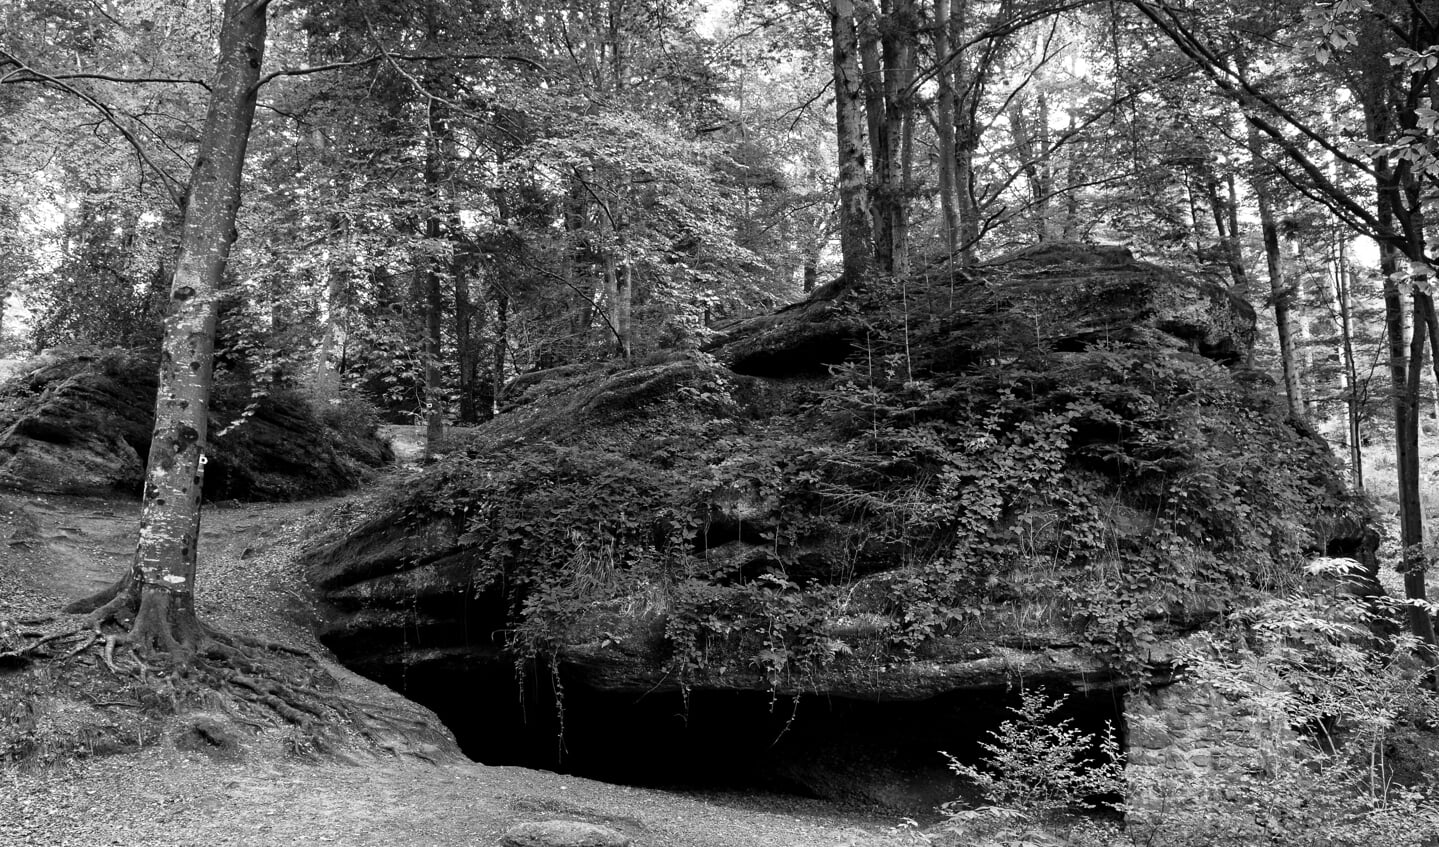 De Col de la Chapelotte ligt in de Vogezen. Tijdens de Eerste Wereldoorlog werd de Grotte des Poilus door de Fransen als hulppost gebruikt om de gewonden te verzorgen.